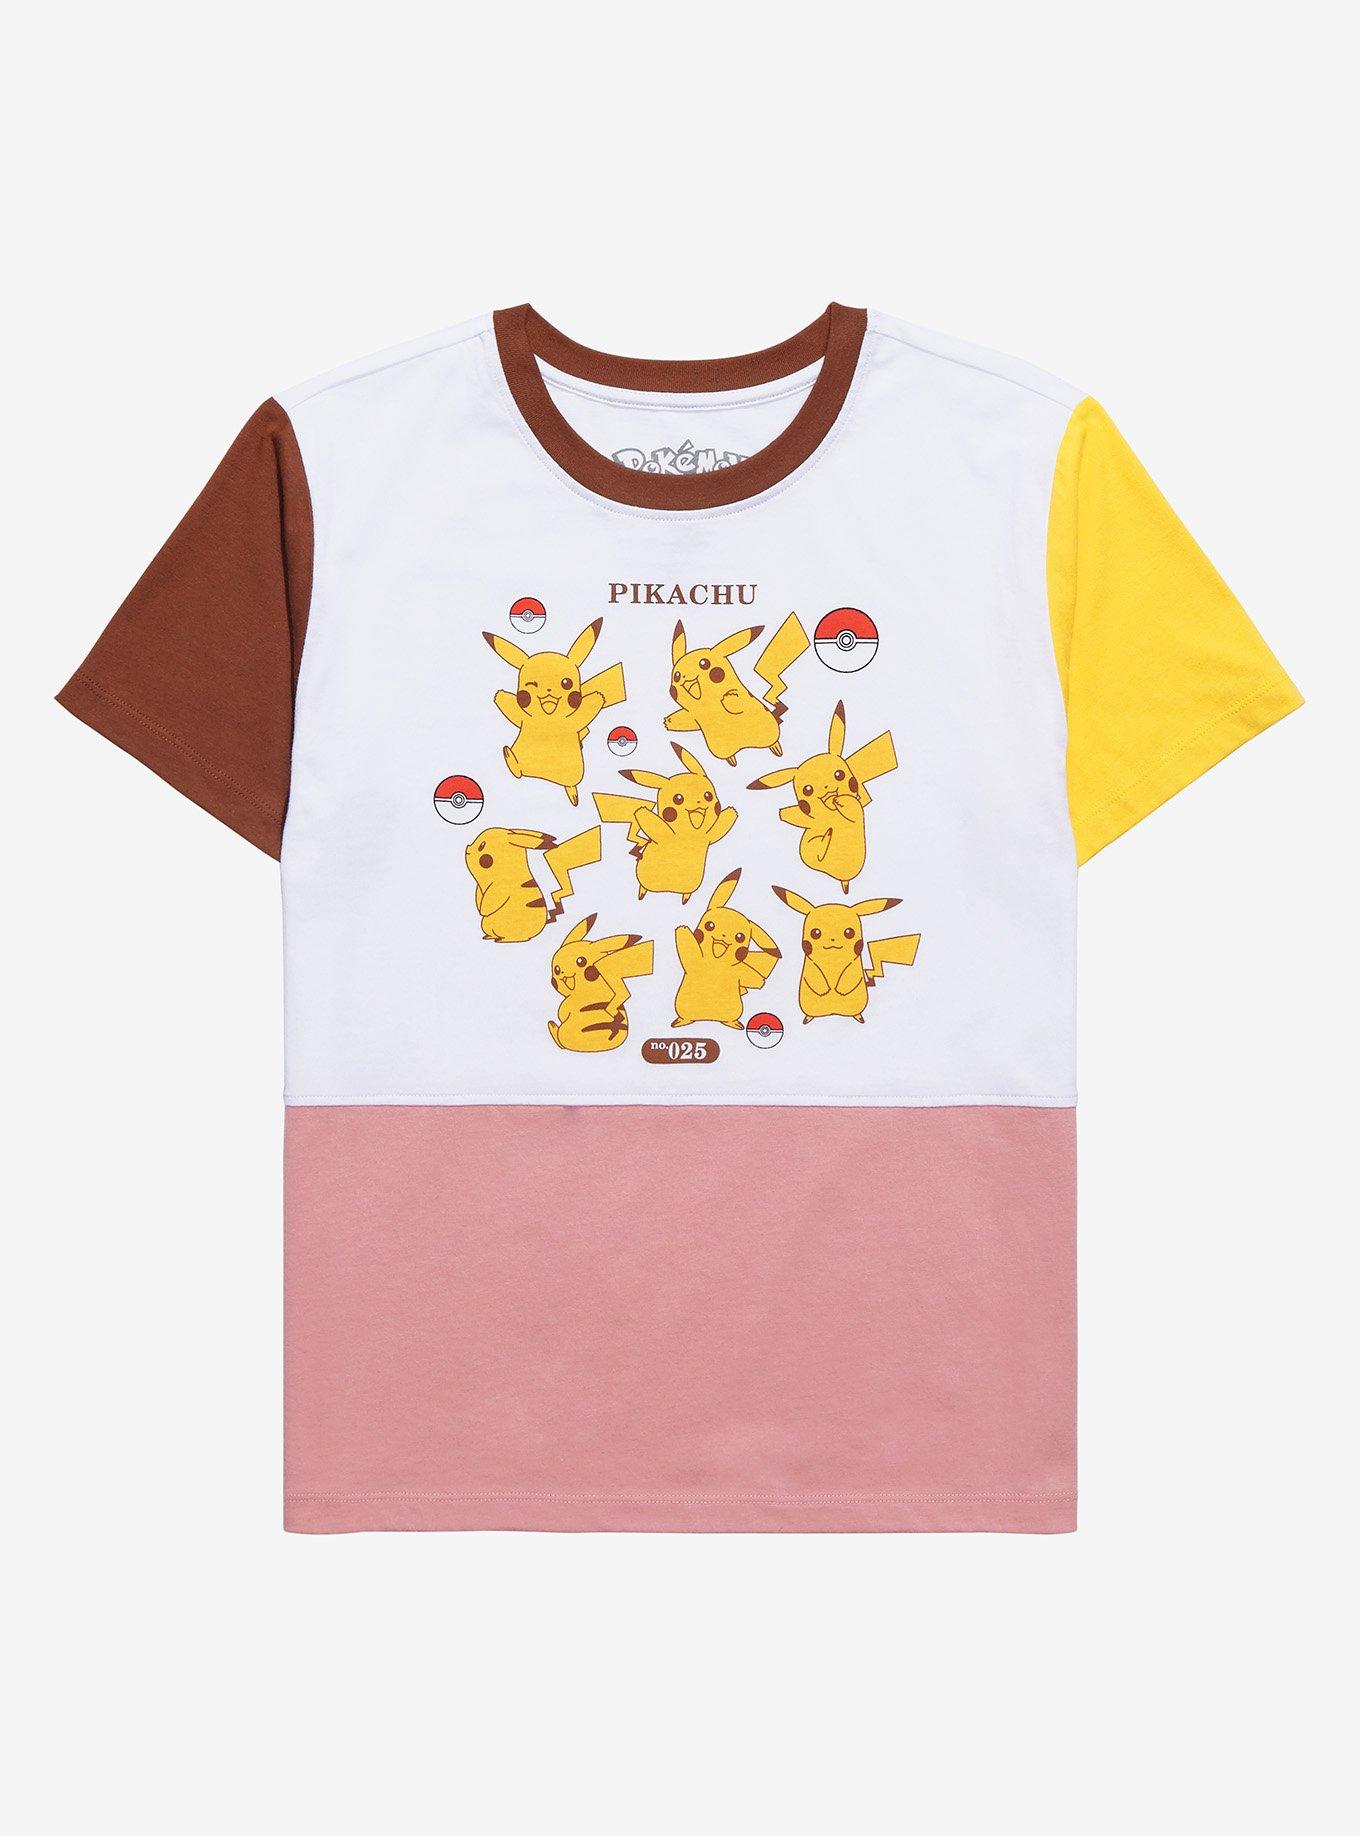 Pokémon Pikachu Color Block Women's T-Shirt - BoxLunch Exclusive, MULTI, hi-res